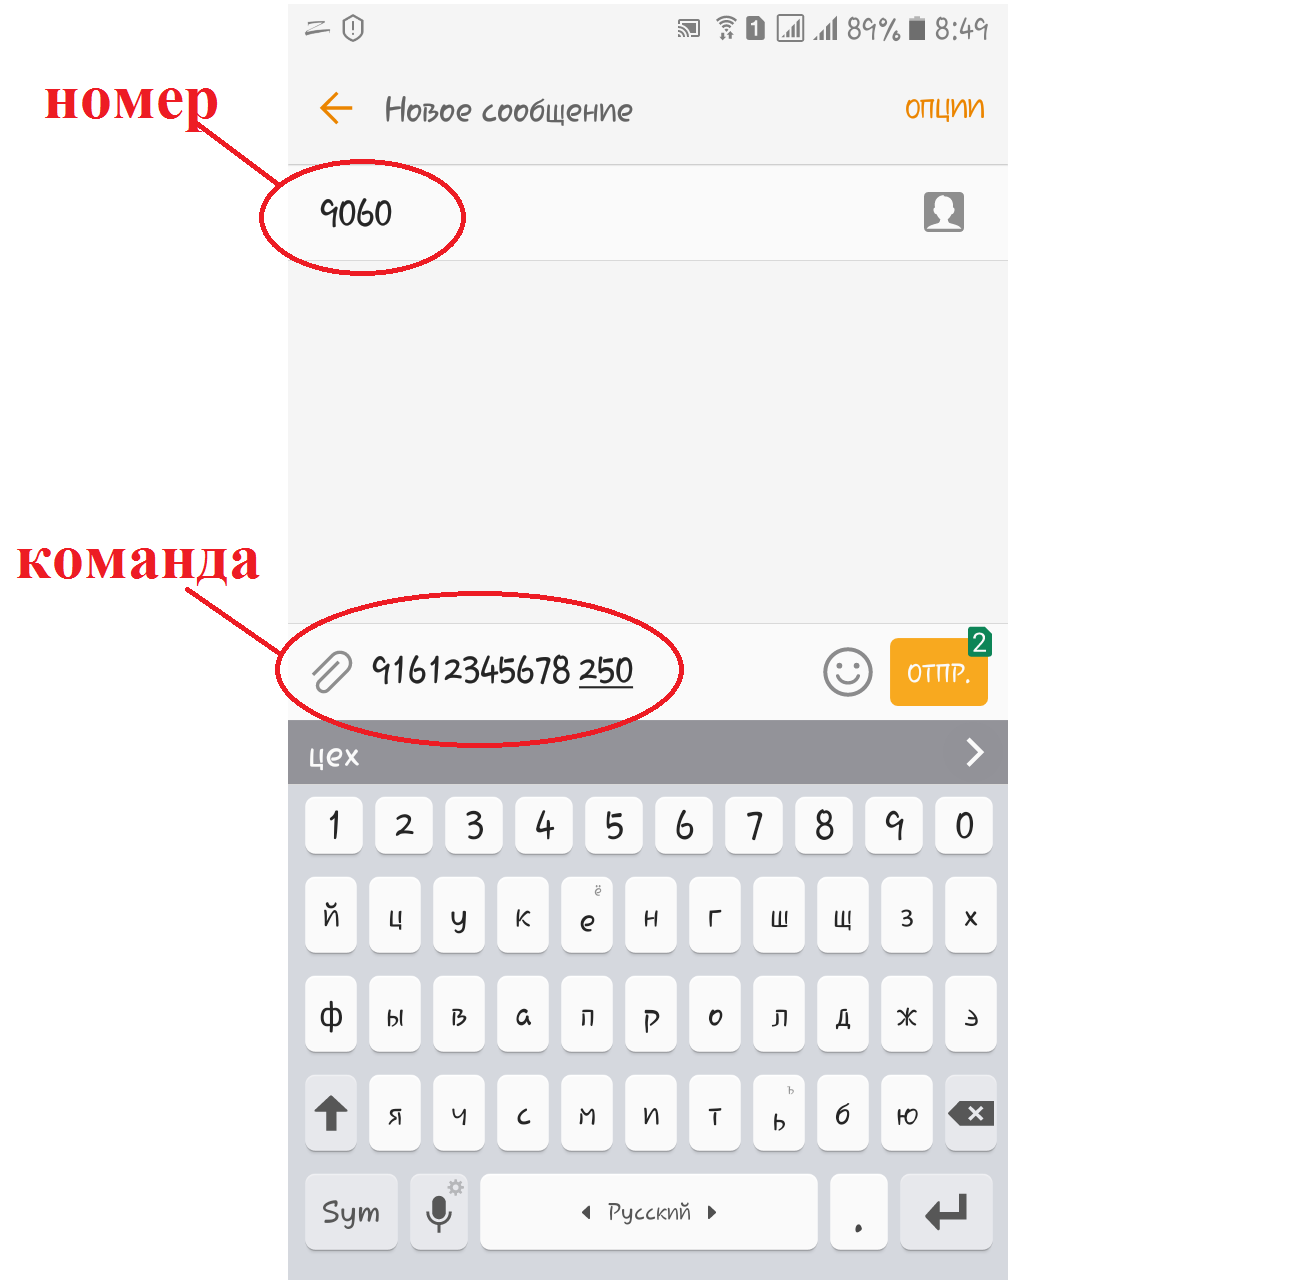 Ввод СМС сообщения для увеличения баланса счета 91612345678 на 250 рублей